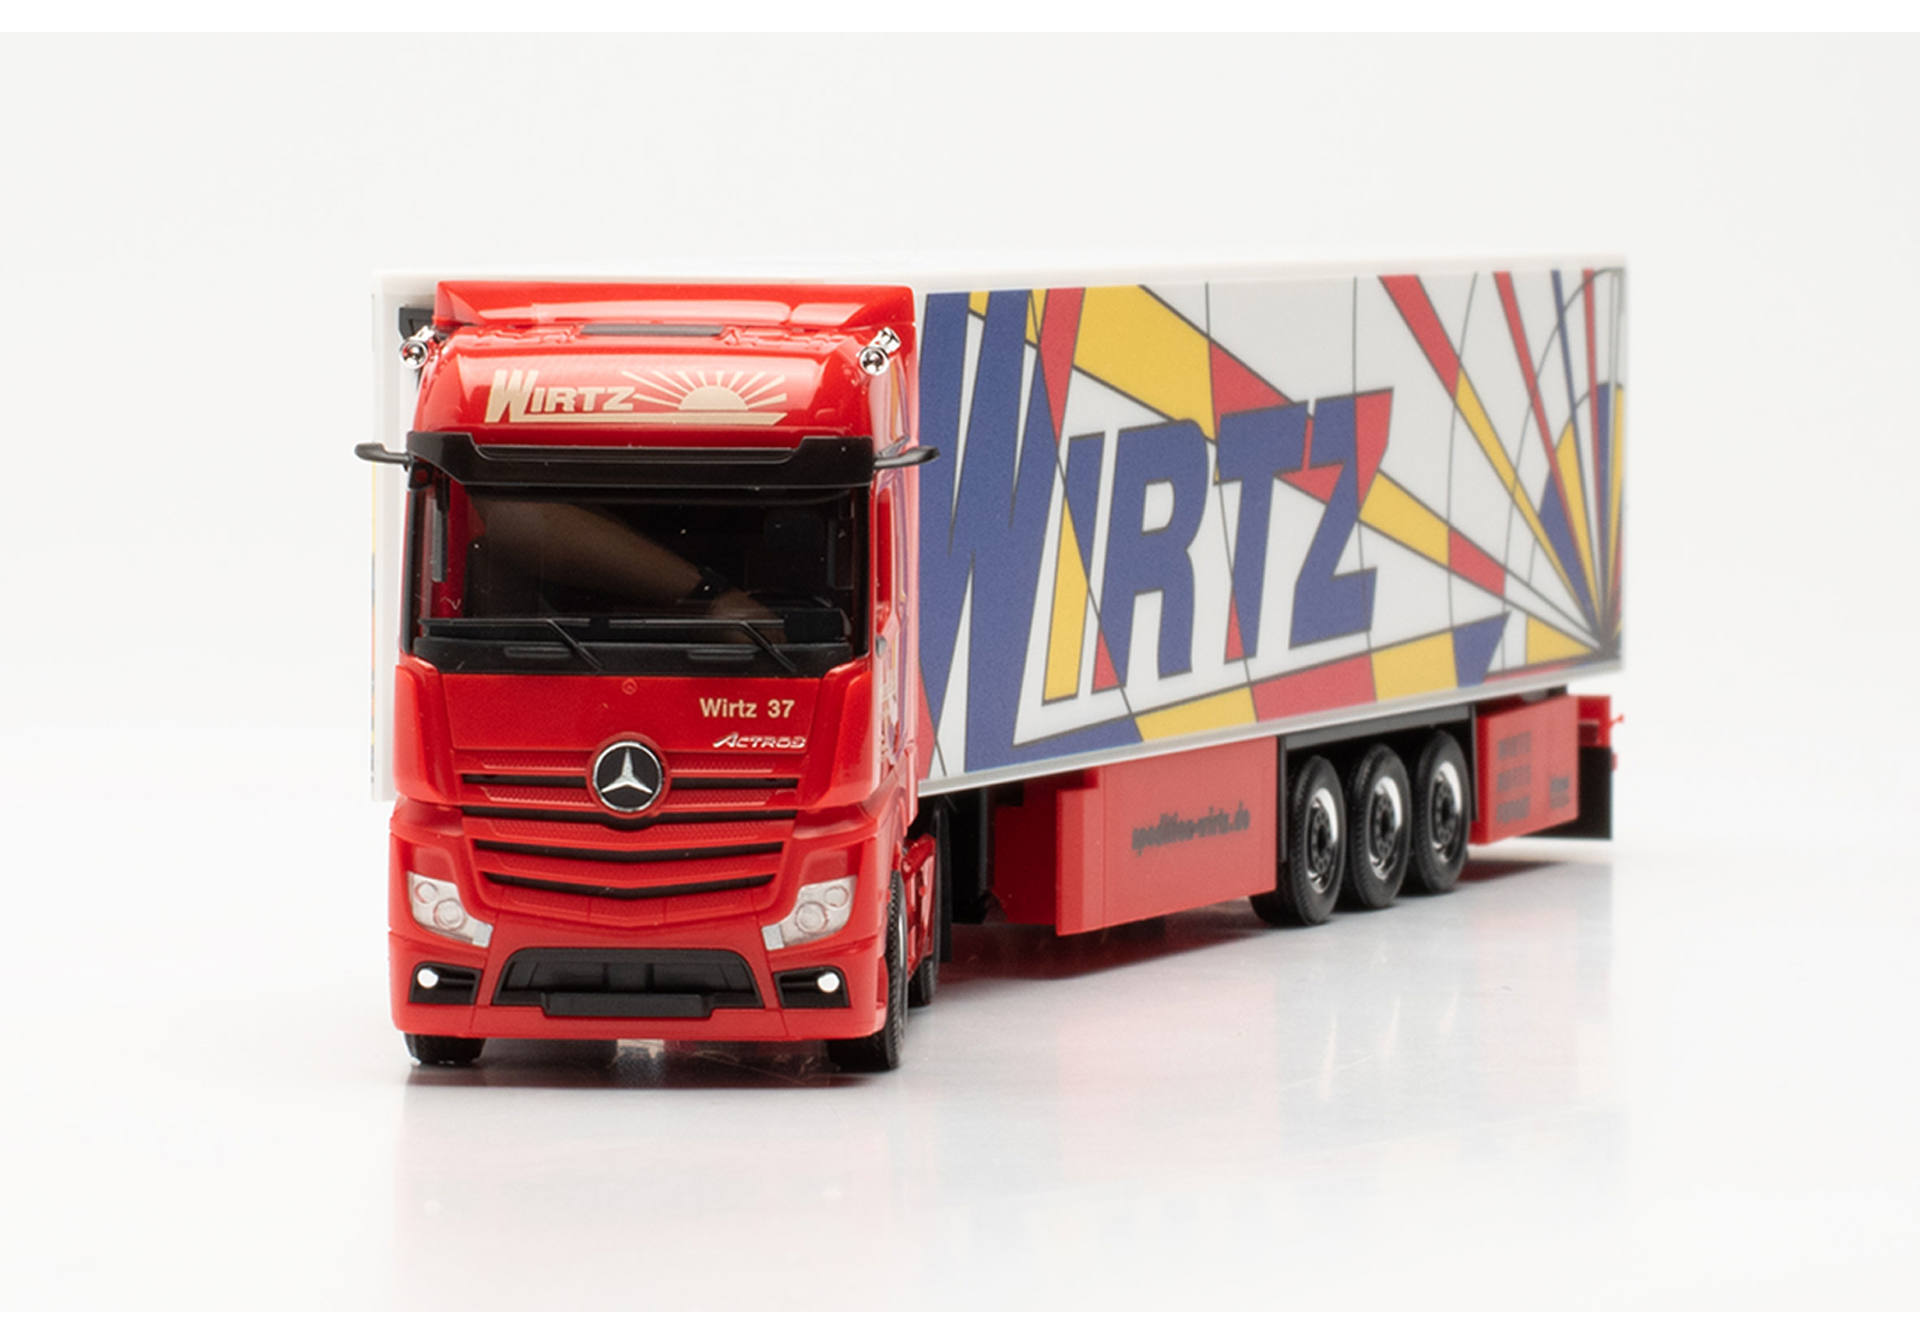 Mercedes-Benz Actros `18 Bigspace 15 meter refrigerated box semitrailer truck „Wirtz Popart“ (North Rhine-Westphalia/Bornheim)